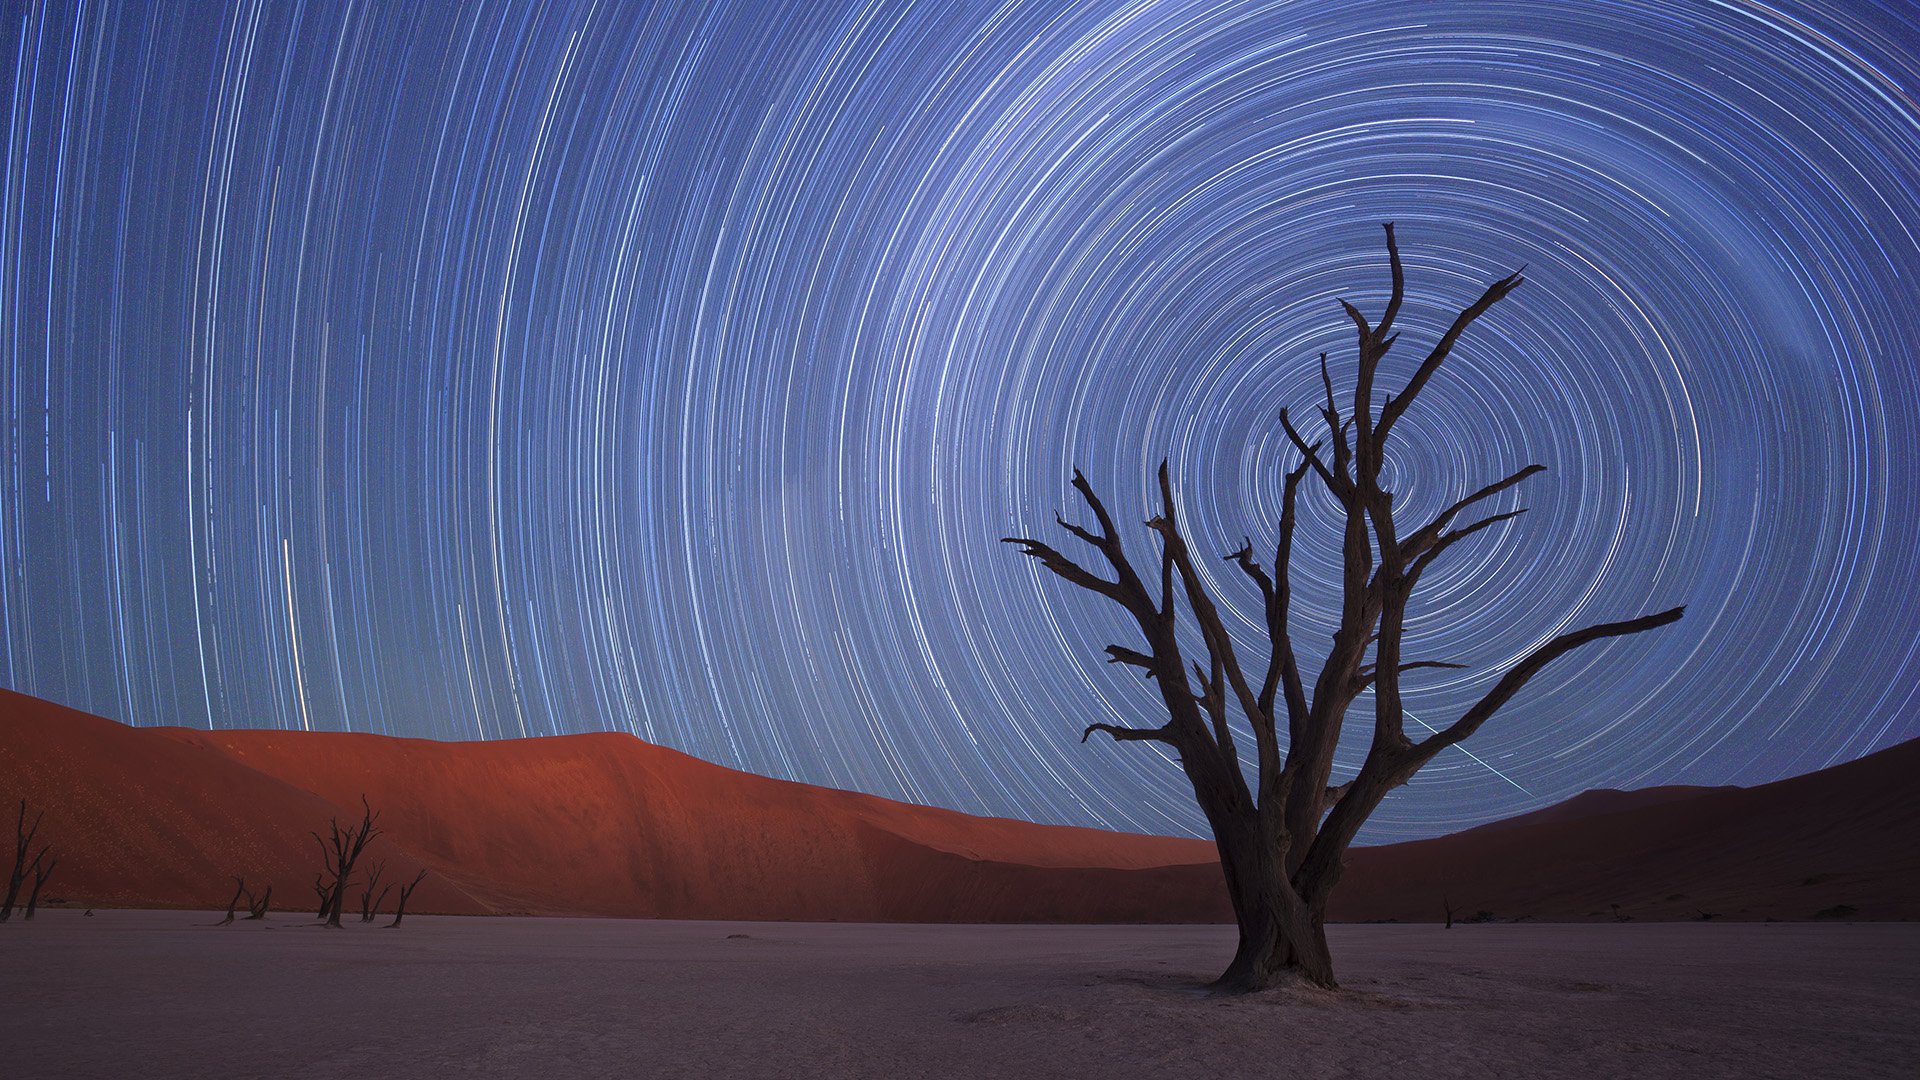 star trails fond d'écran,ciel,arbre,paysage,atmosphère,désert